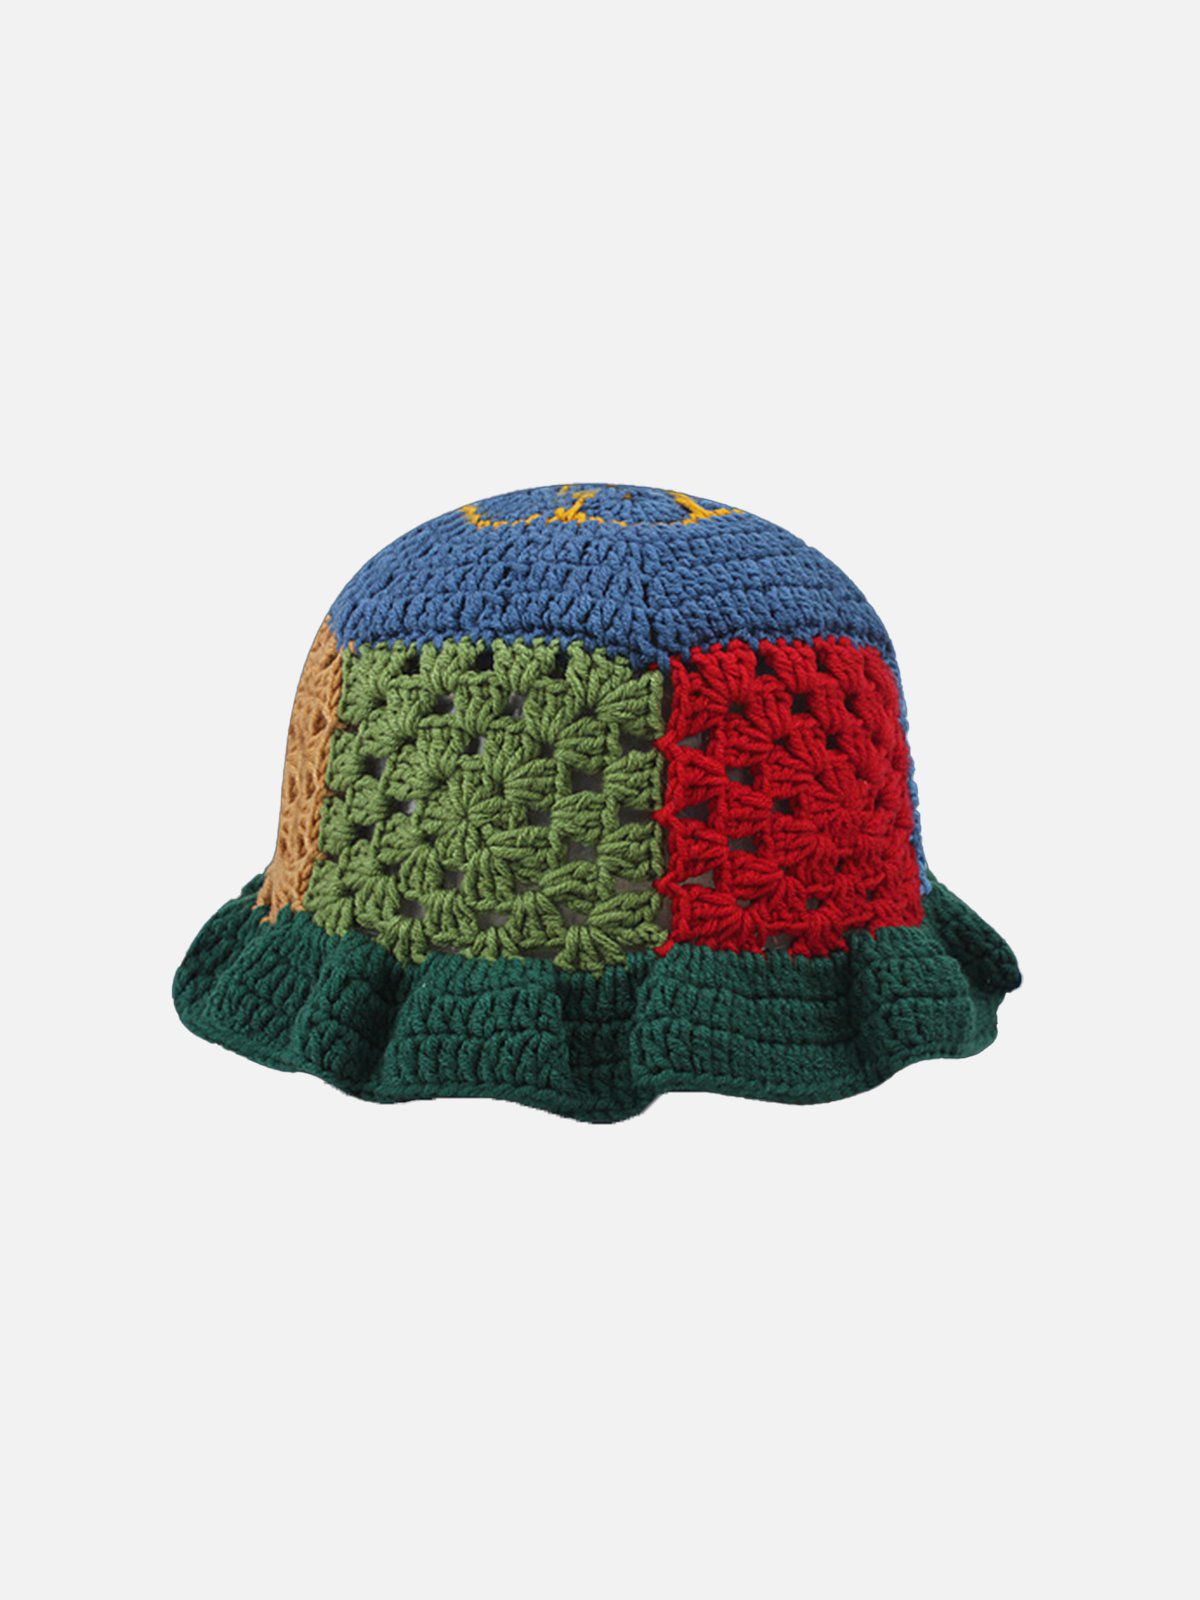 帽子soonerorlater Hand-knitted Bucket Hat